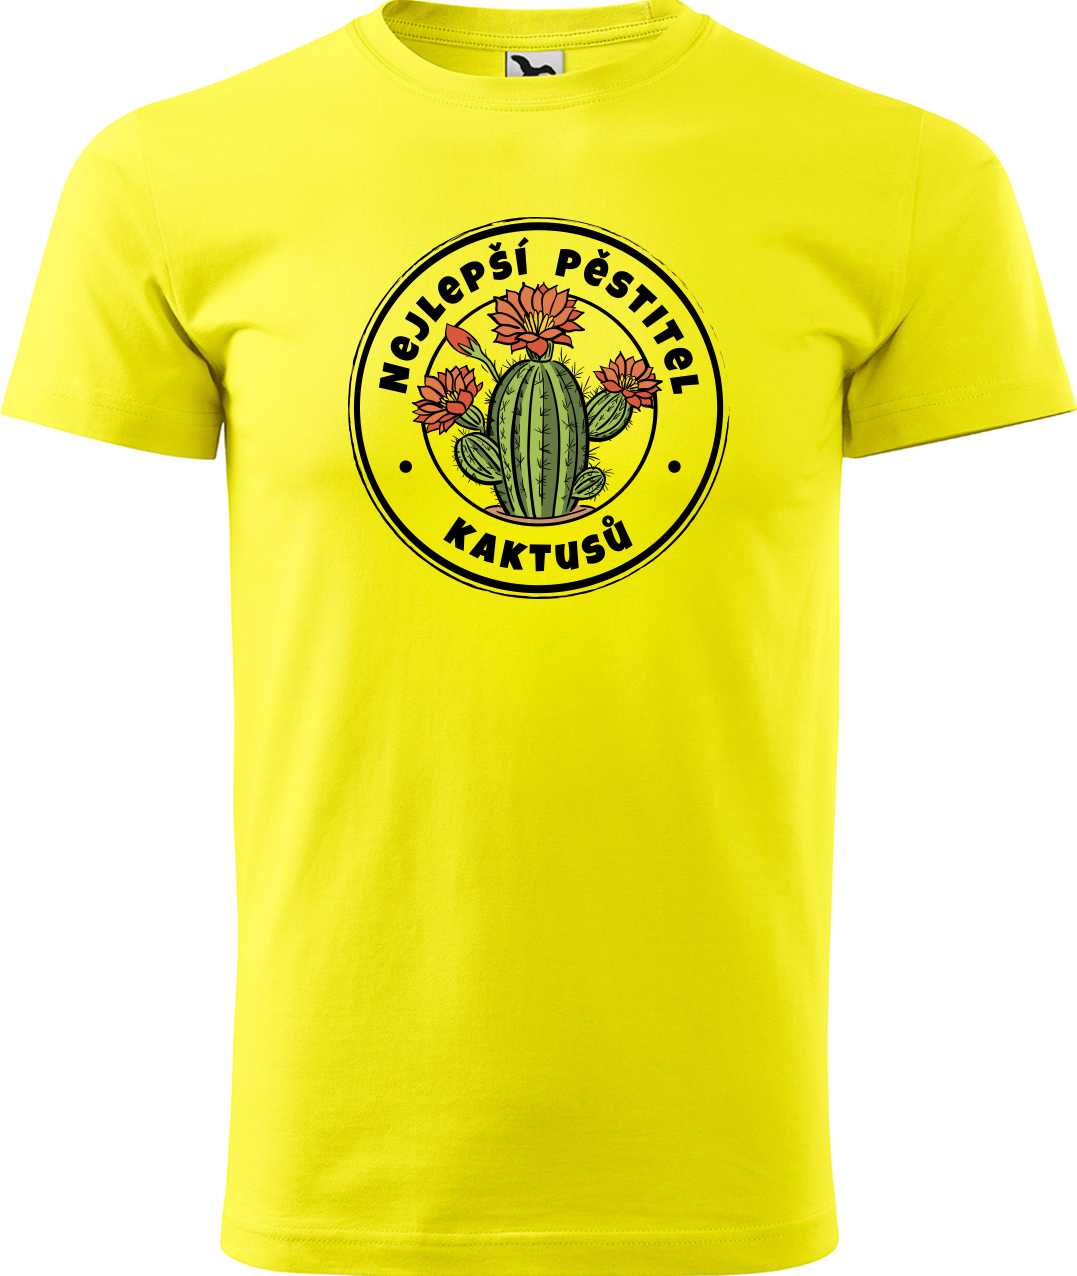 Tričko s kaktusem - Nejlepší pěstitel kaktusů Velikost: 2XL, Barva: Žlutá (04)